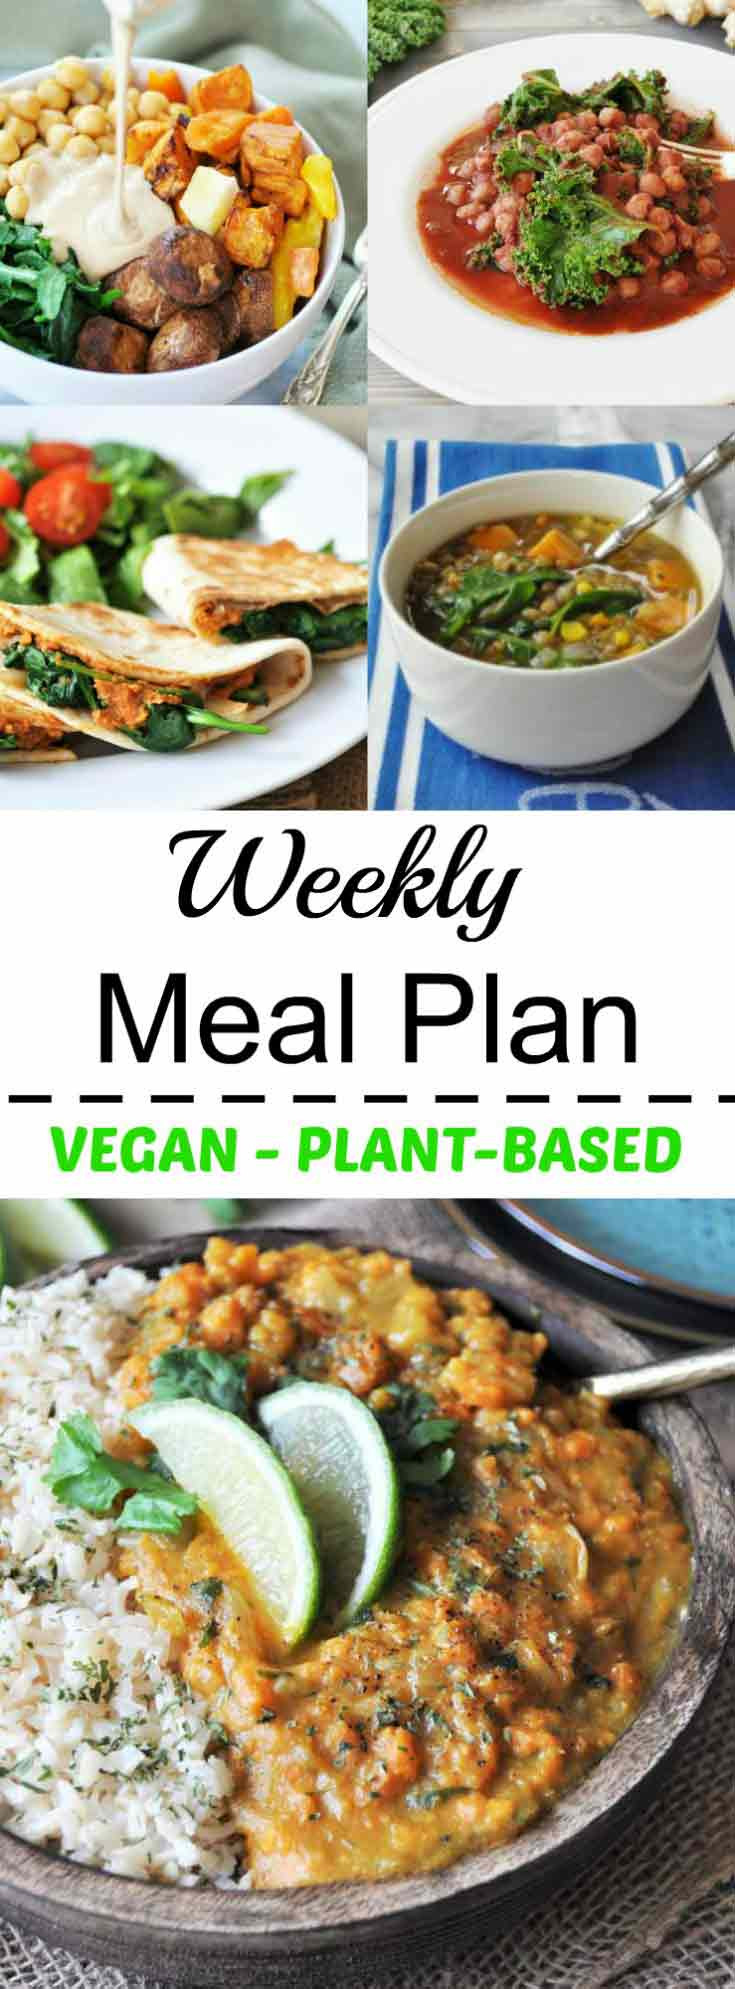 Easy Vegan Meal Plan
 Healthy Vegan Weeknight Meal Plan Veganosity